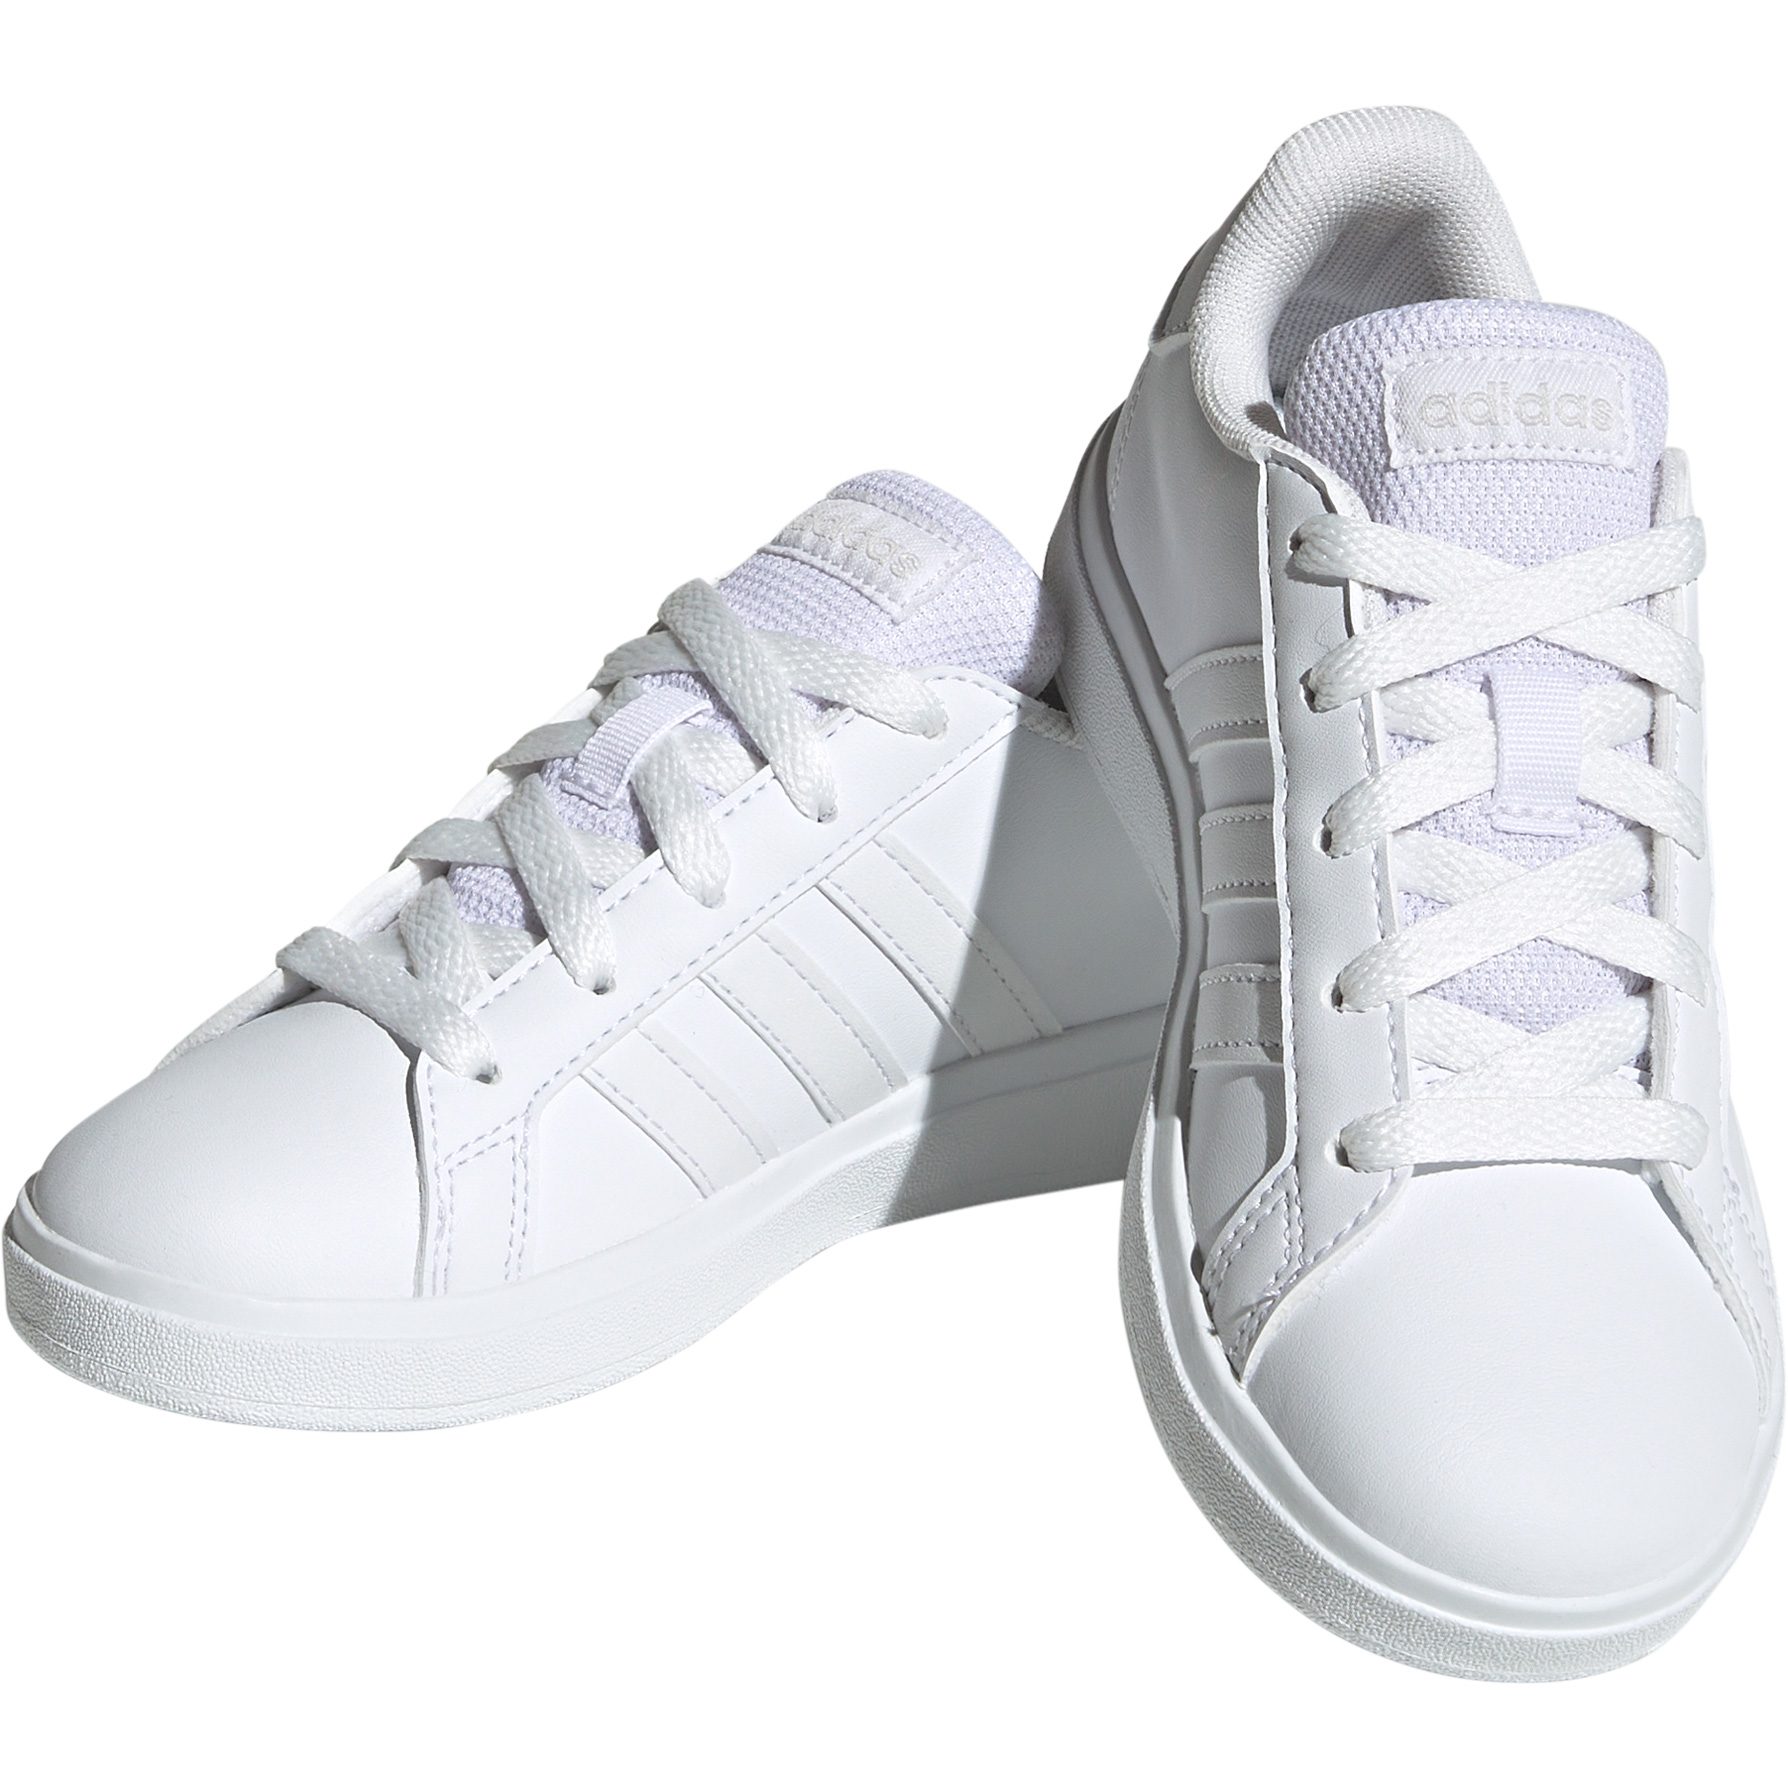 rechtdoor Oraal goedkoop adidas - Grand Court 2.0 Sneaker Kids footwear white at Sport Bittl Shop